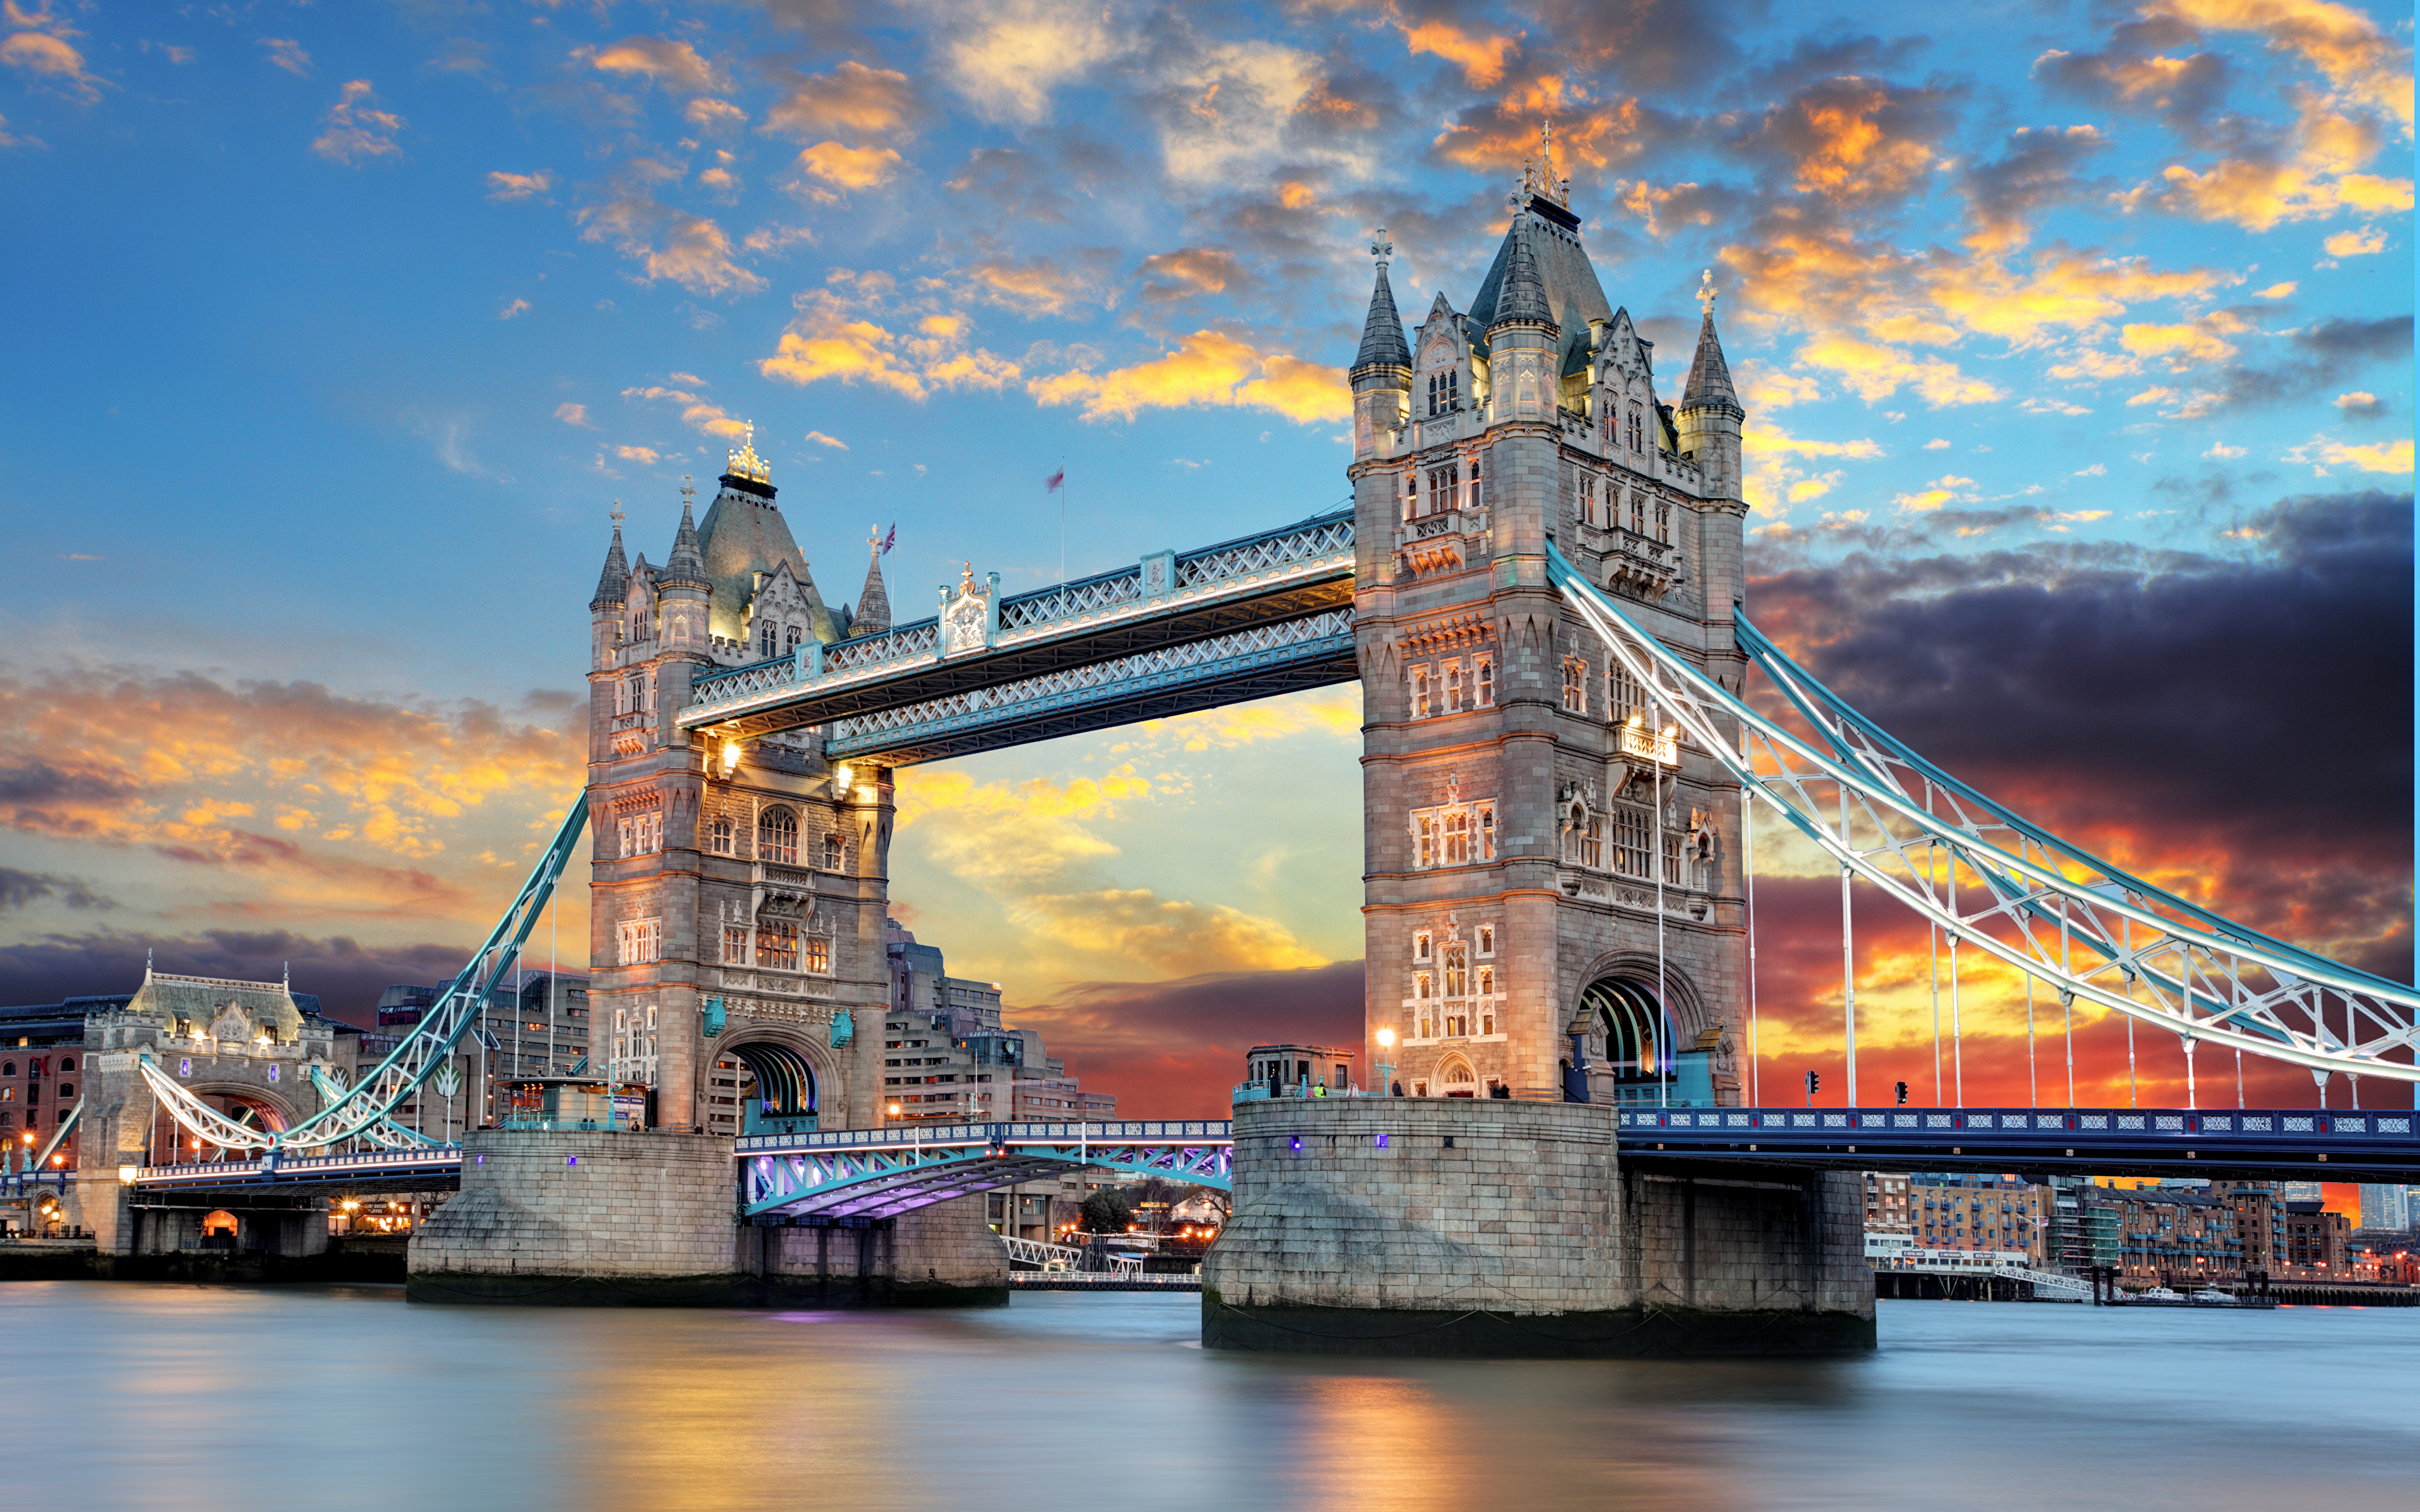 london river trips tower bridge